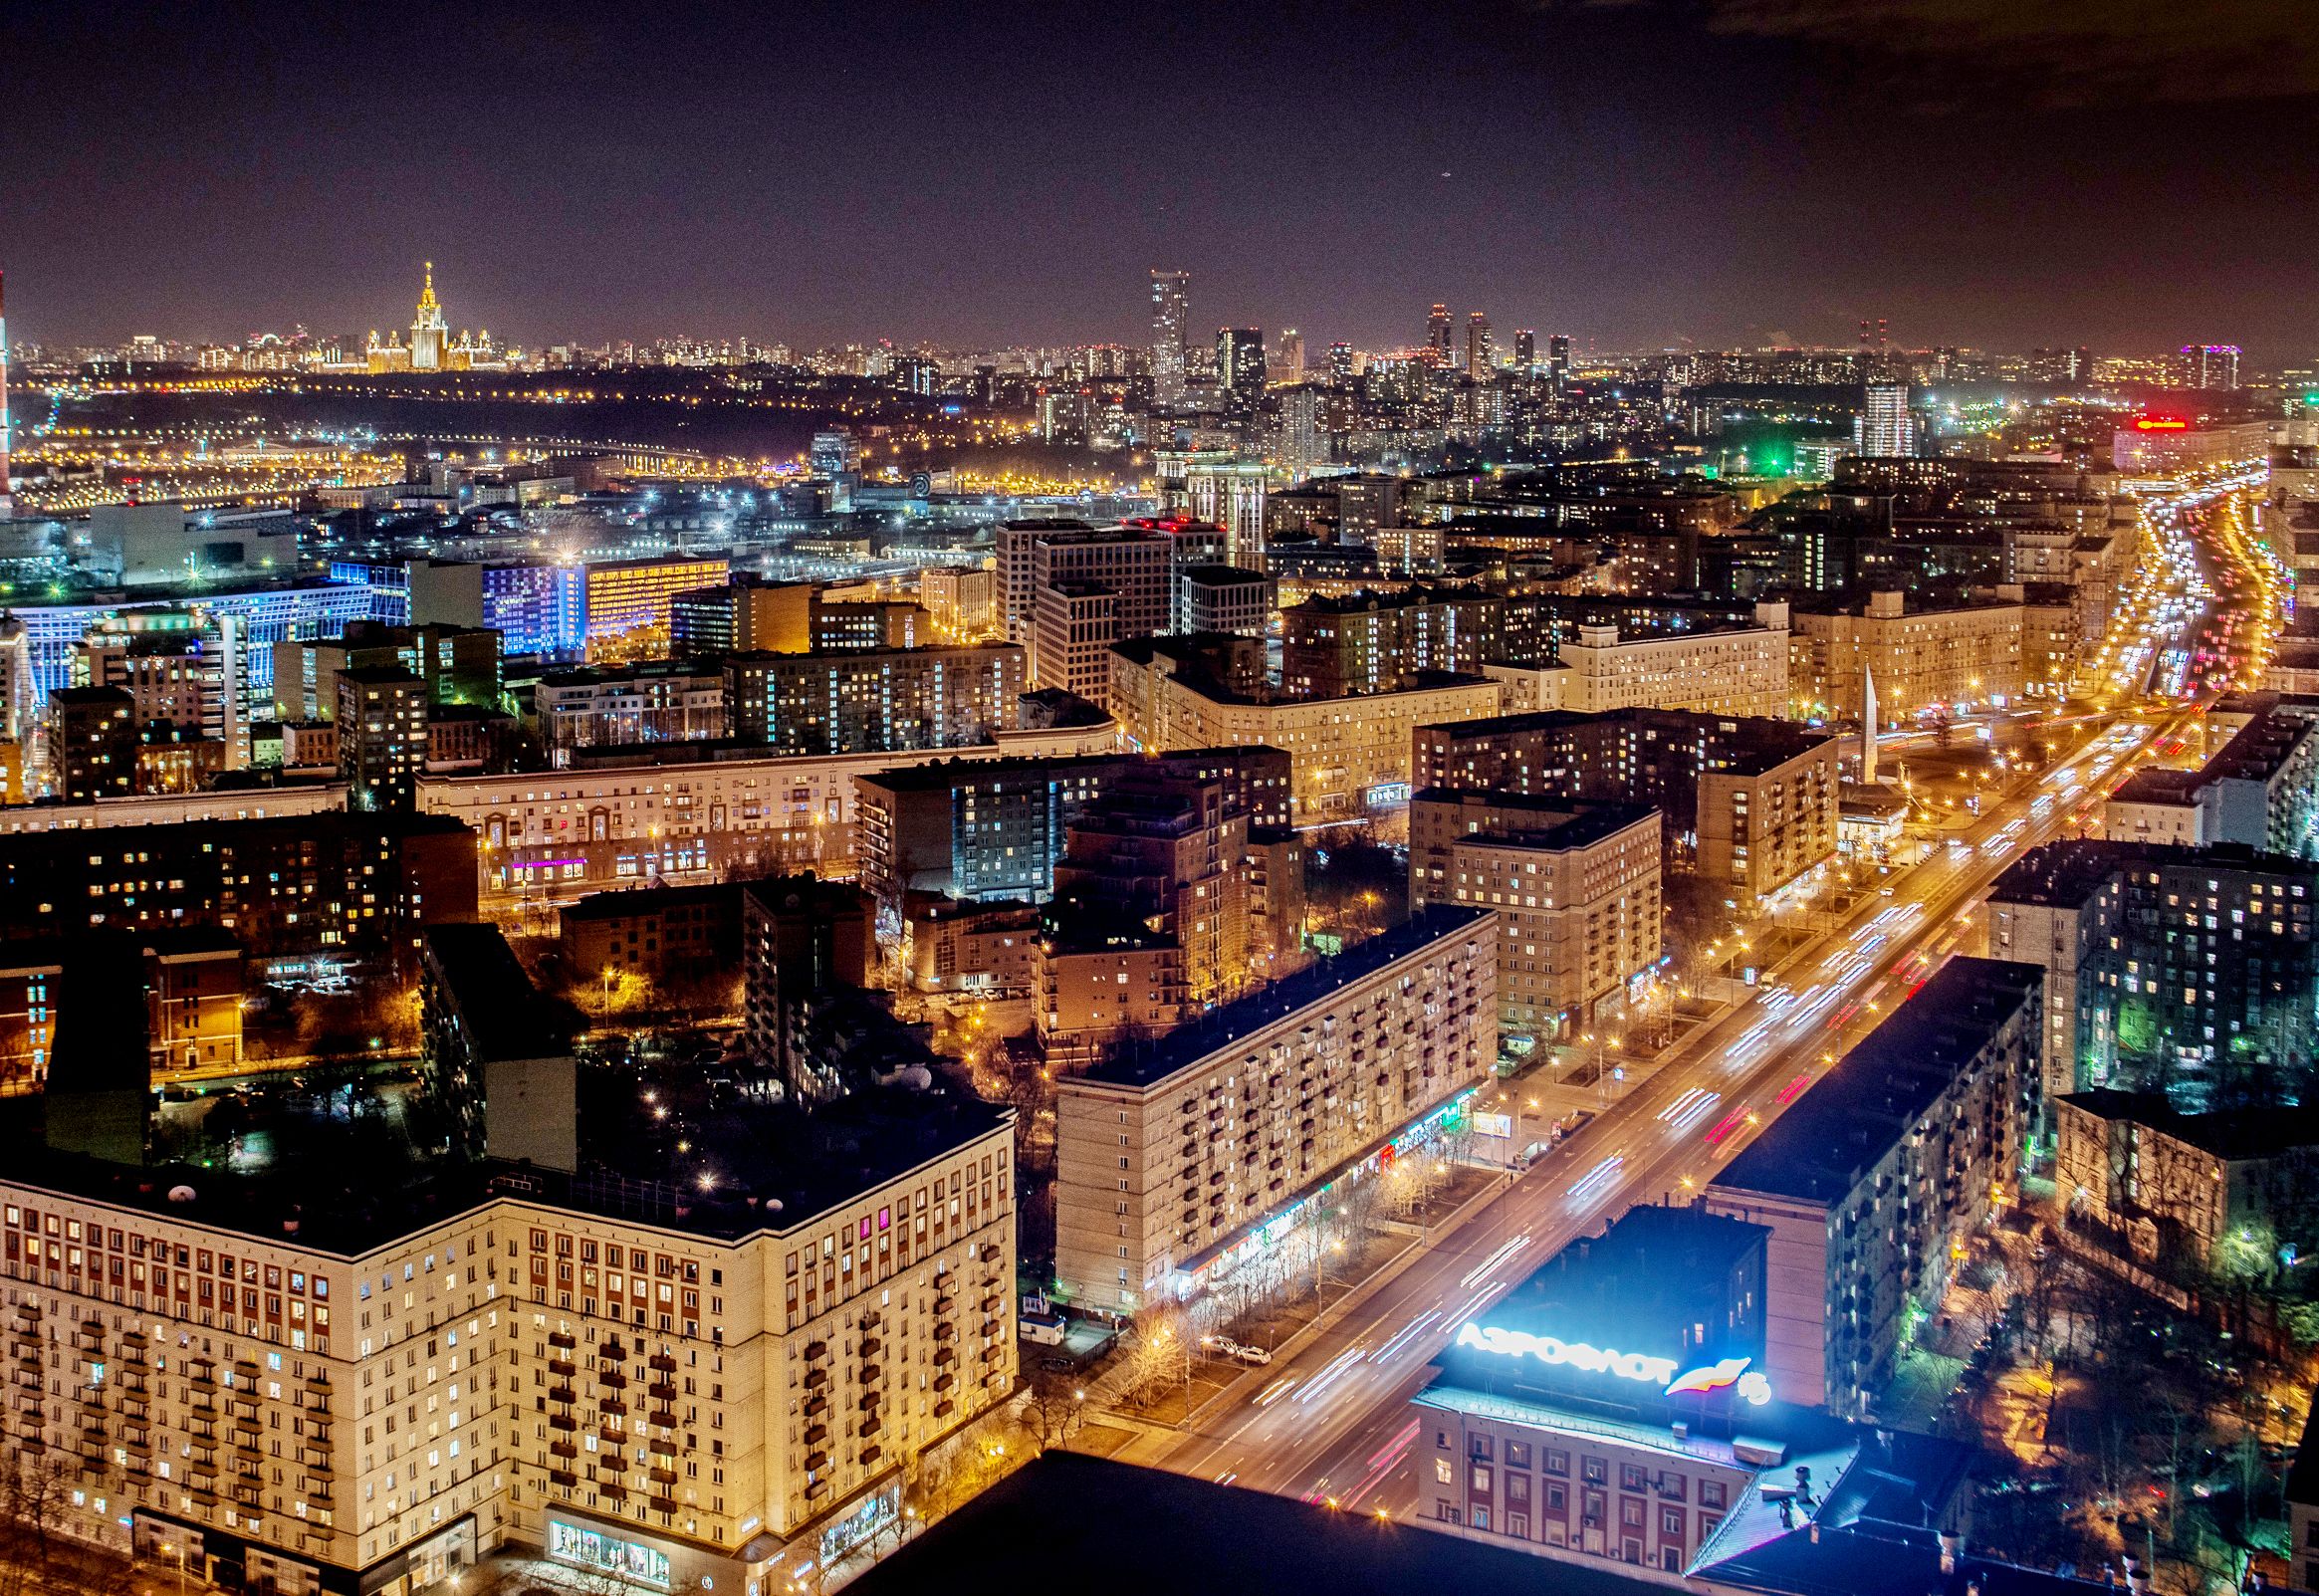 Москва вошла в ТОП-5 самых освещенных городов мира